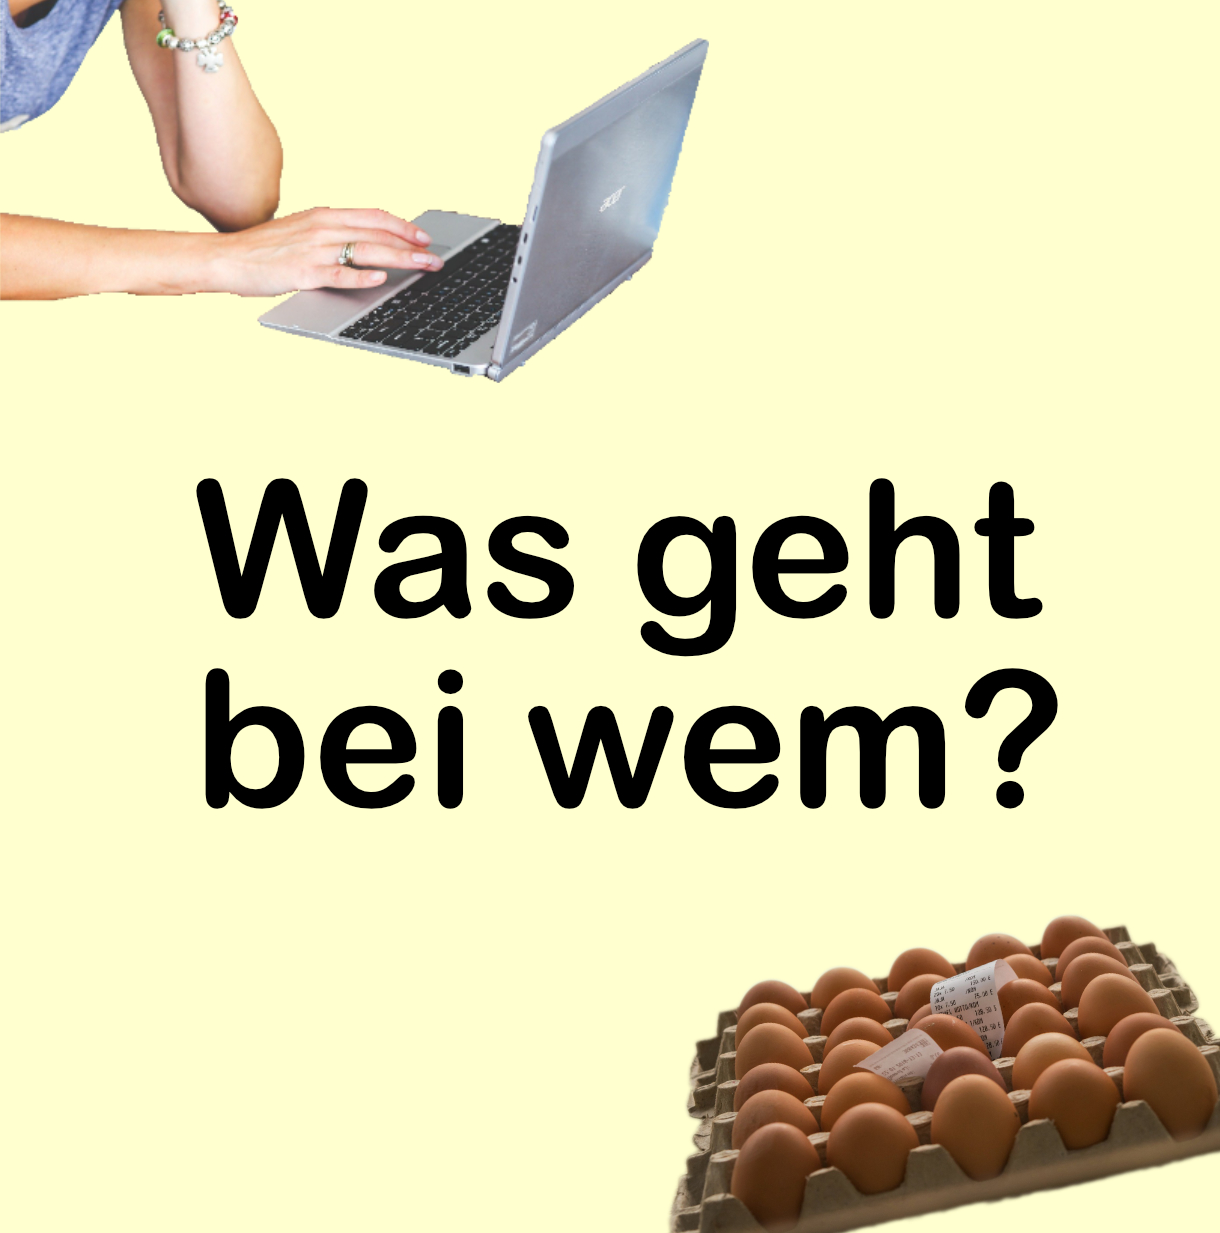 Das Bild zeigt eine Laptop mit einer Hand, die etwas eintippt sowie eine Packung Eier, die vielleicht gerade bestellt wird.